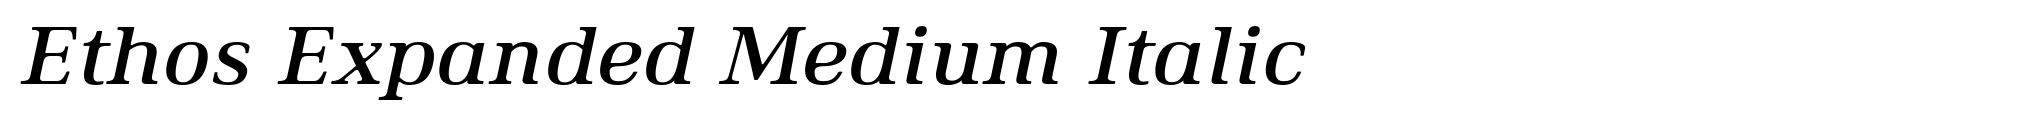 Ethos Expanded Medium Italic image